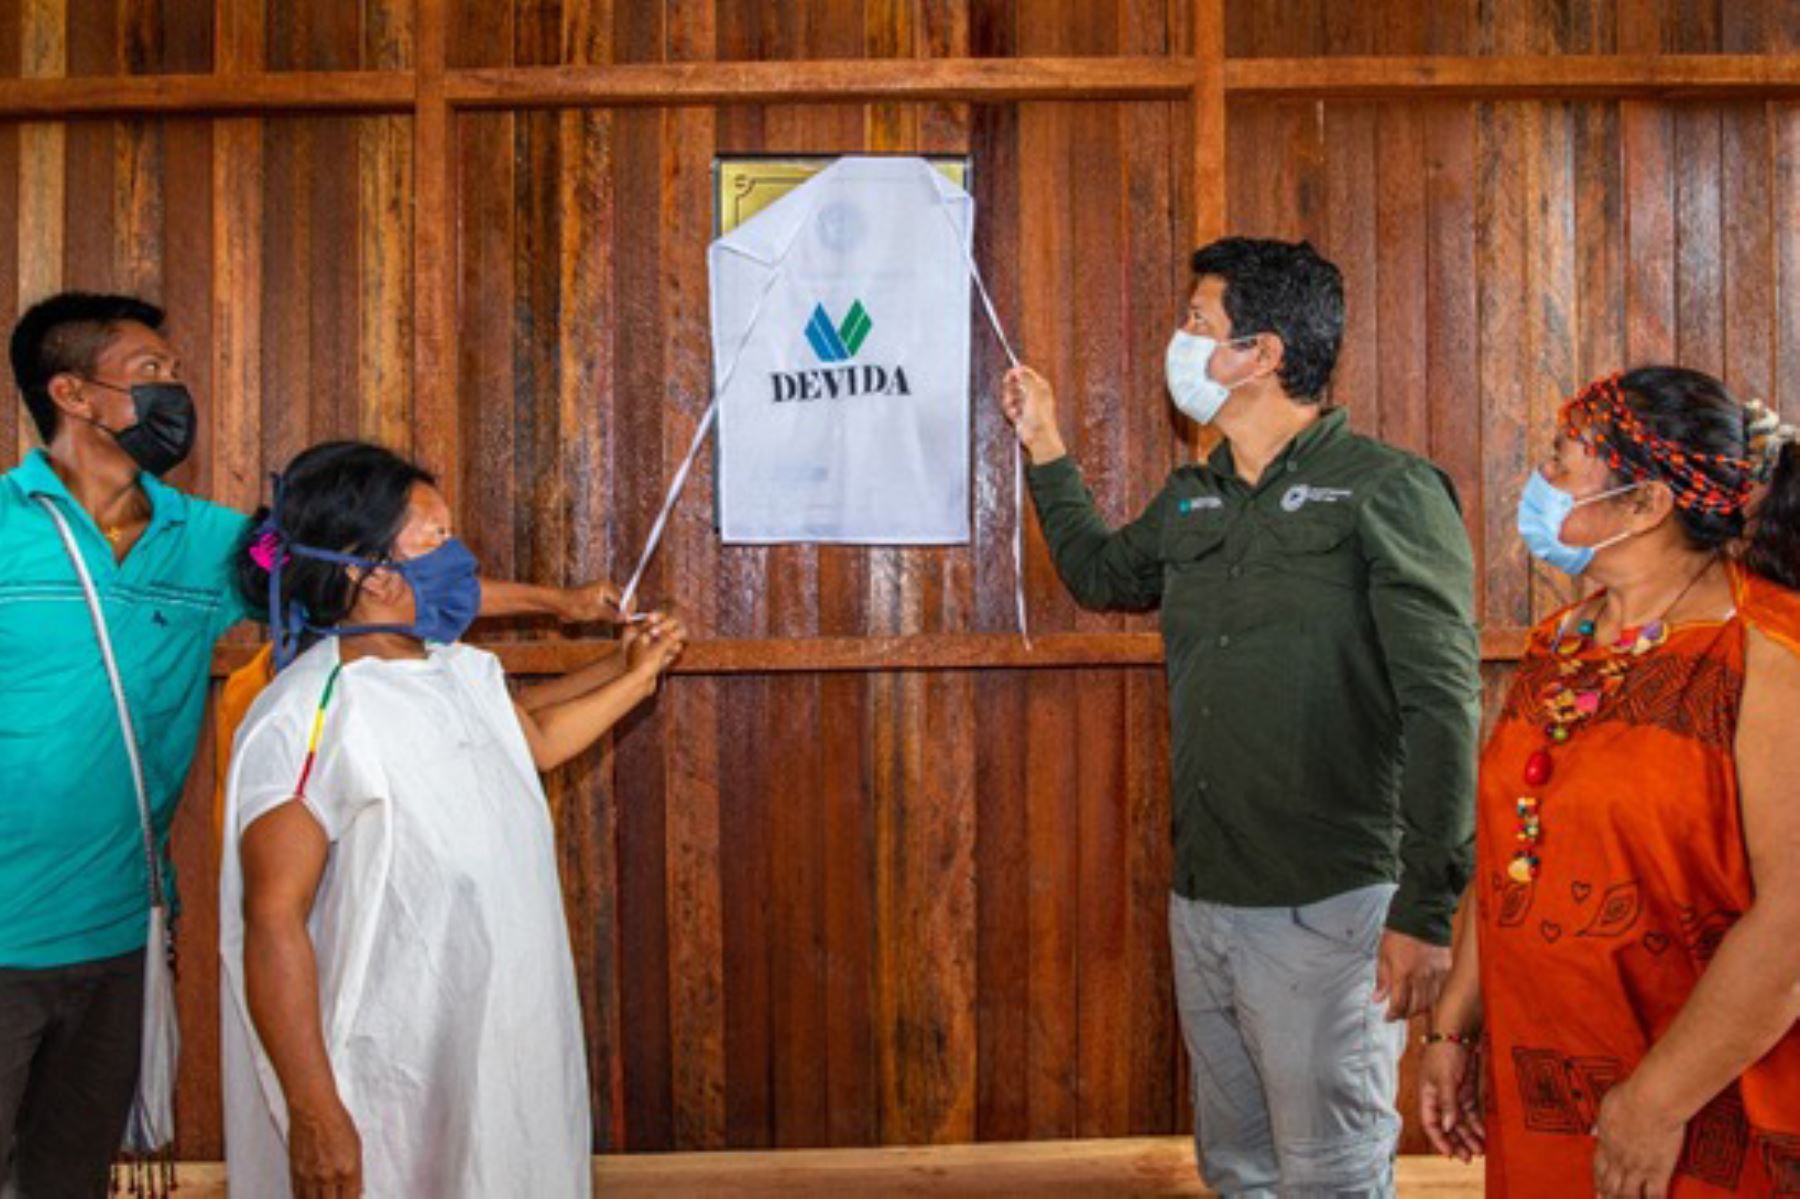 Las comunidades accedieron a este beneficio tras el acta de entendimiento que firmaron de manera voluntaria con el equipo técnico de Devida. Foto: ANDINA/Devida.